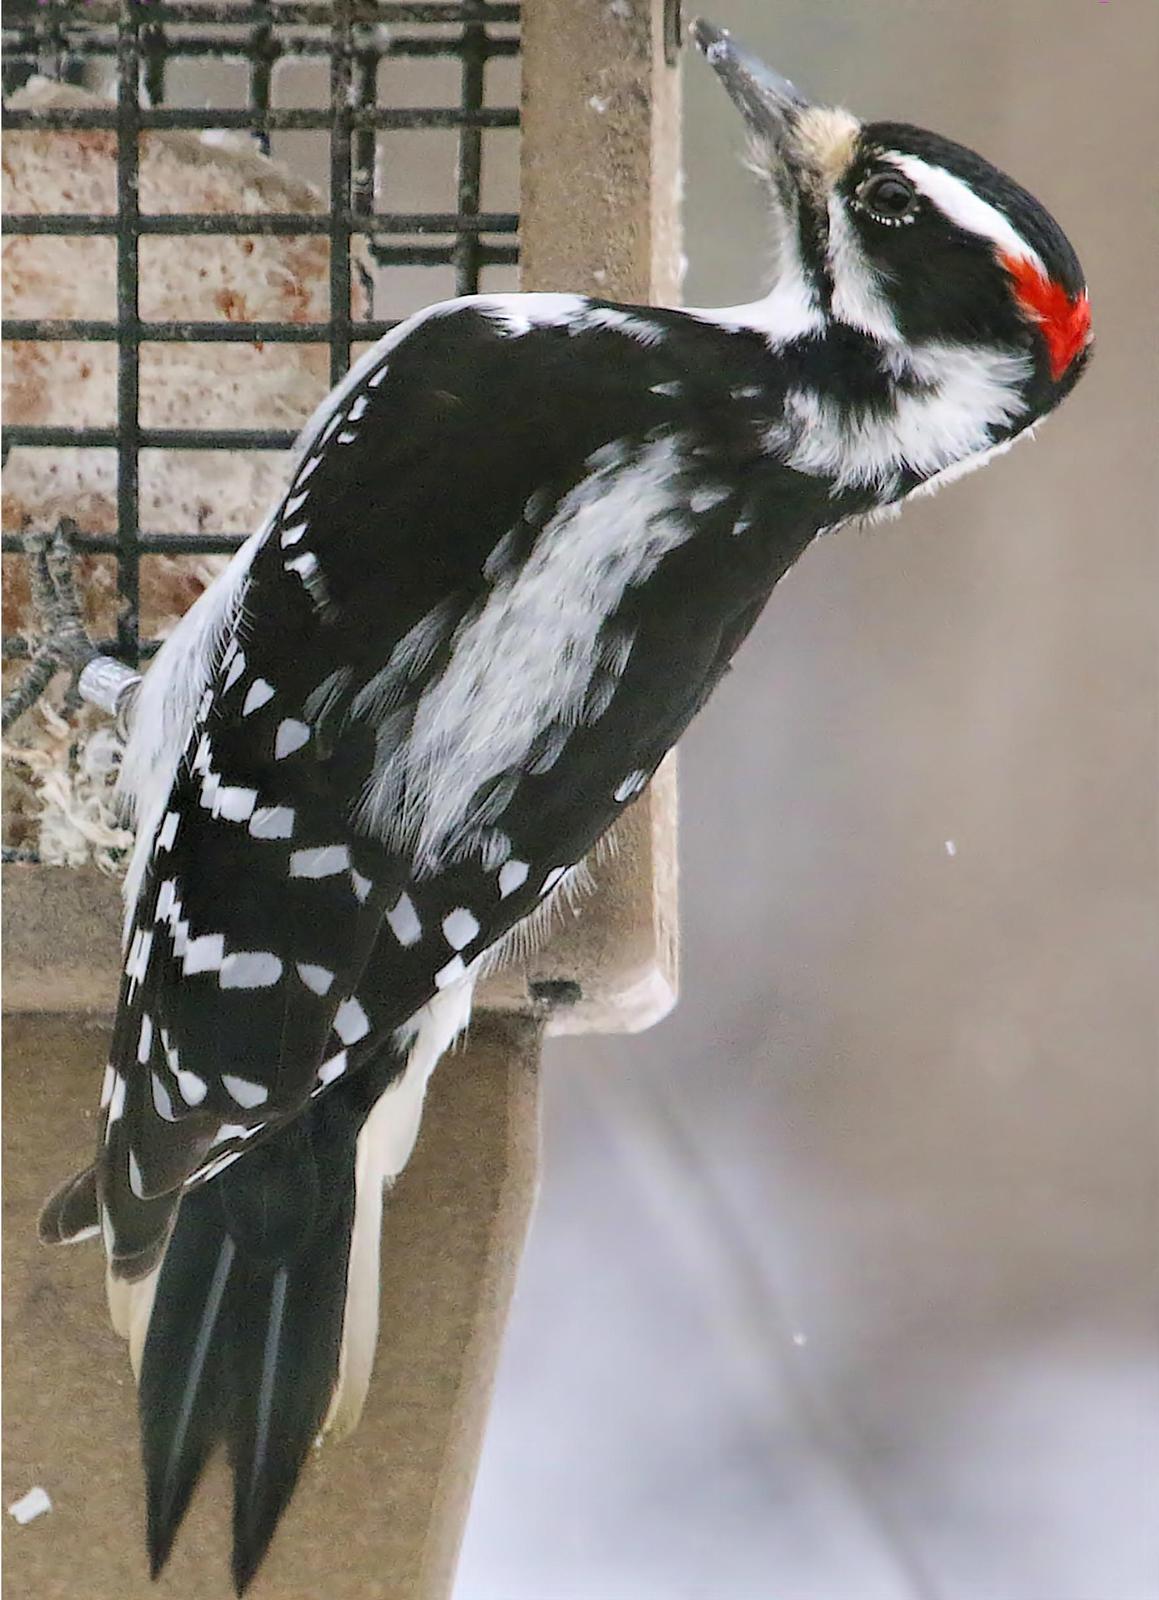 Hairy Woodpecker Photo by Dan Tallman